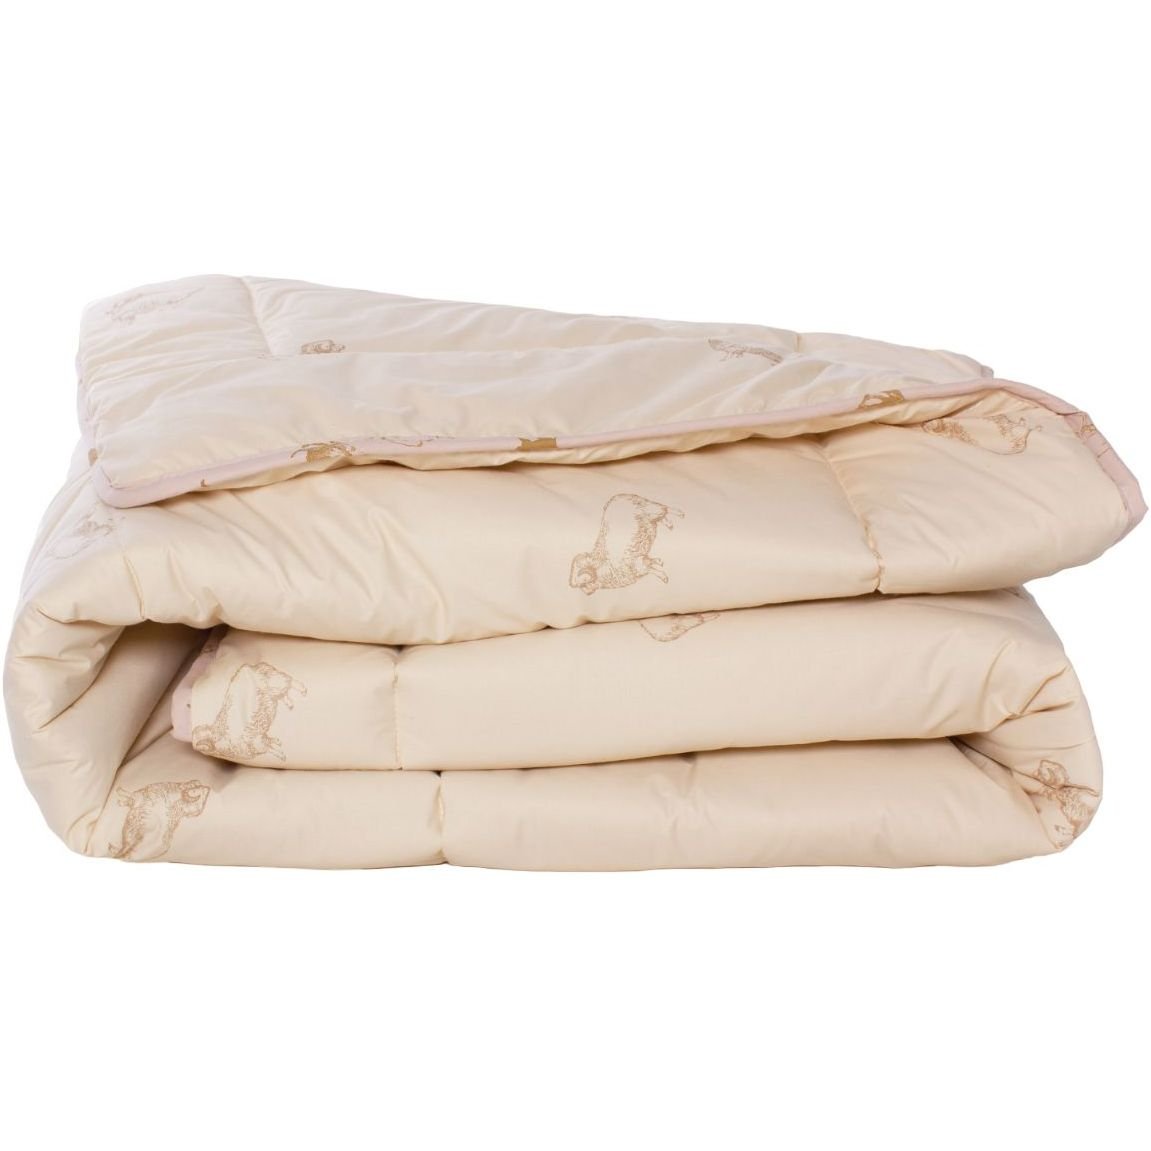 Одеяло шерстяное MirSon Gold Camel №024, зимнее, 140x205 см, кремовое - фото 1